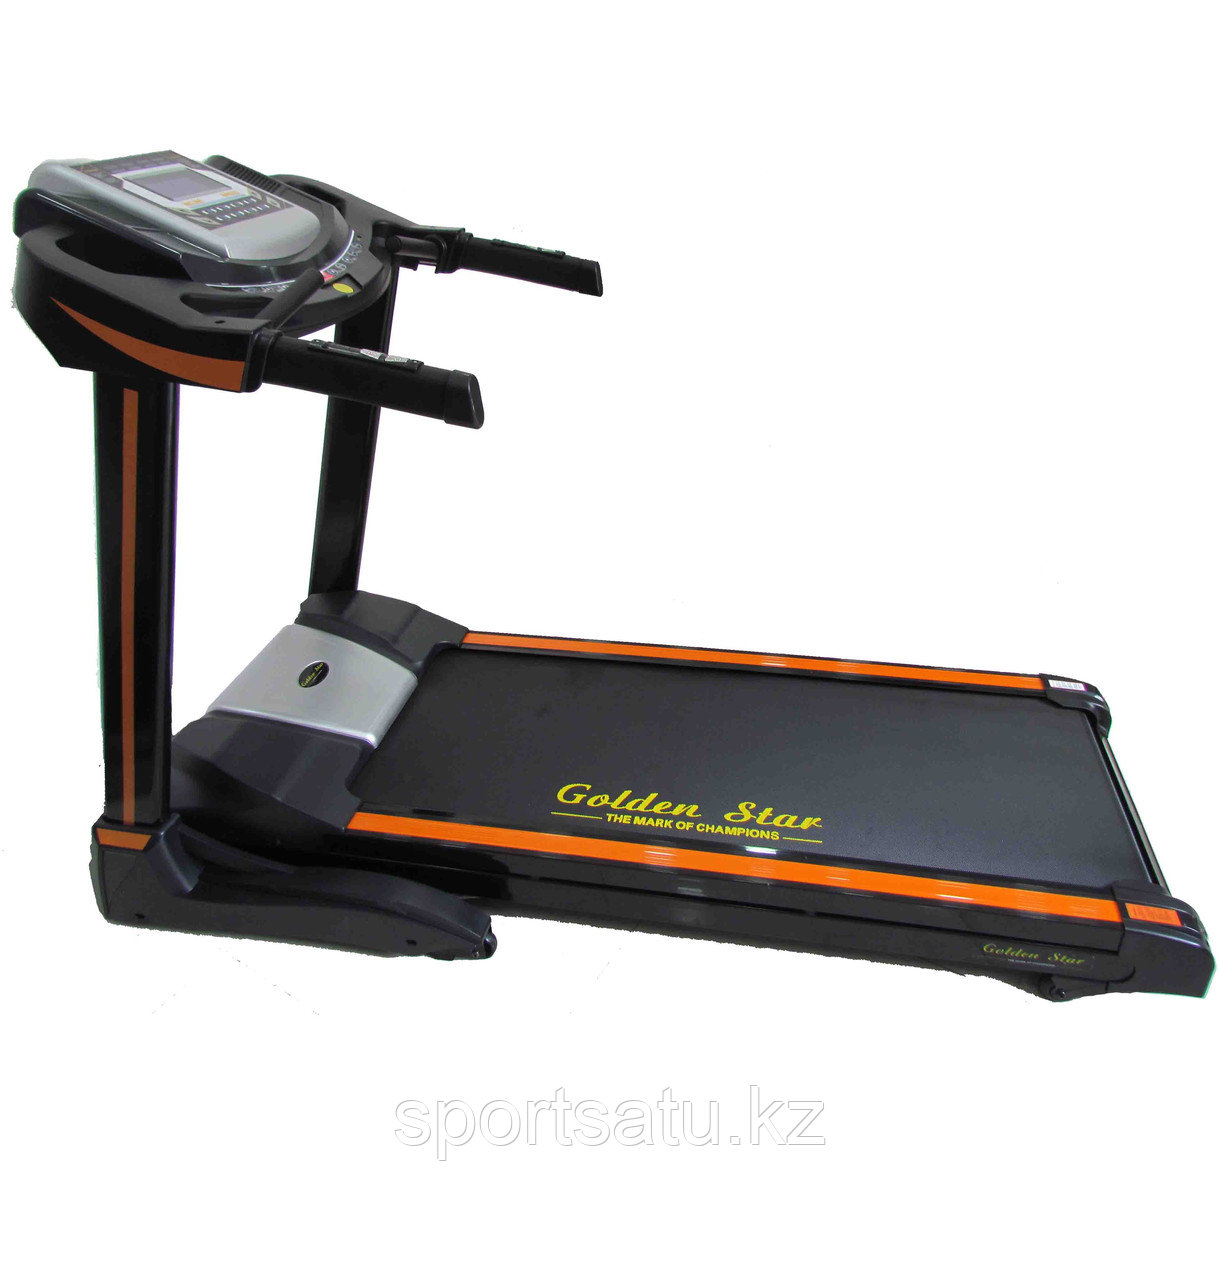 Электрическая беговая дорожка для дома GS2800 Motorized Treadmill